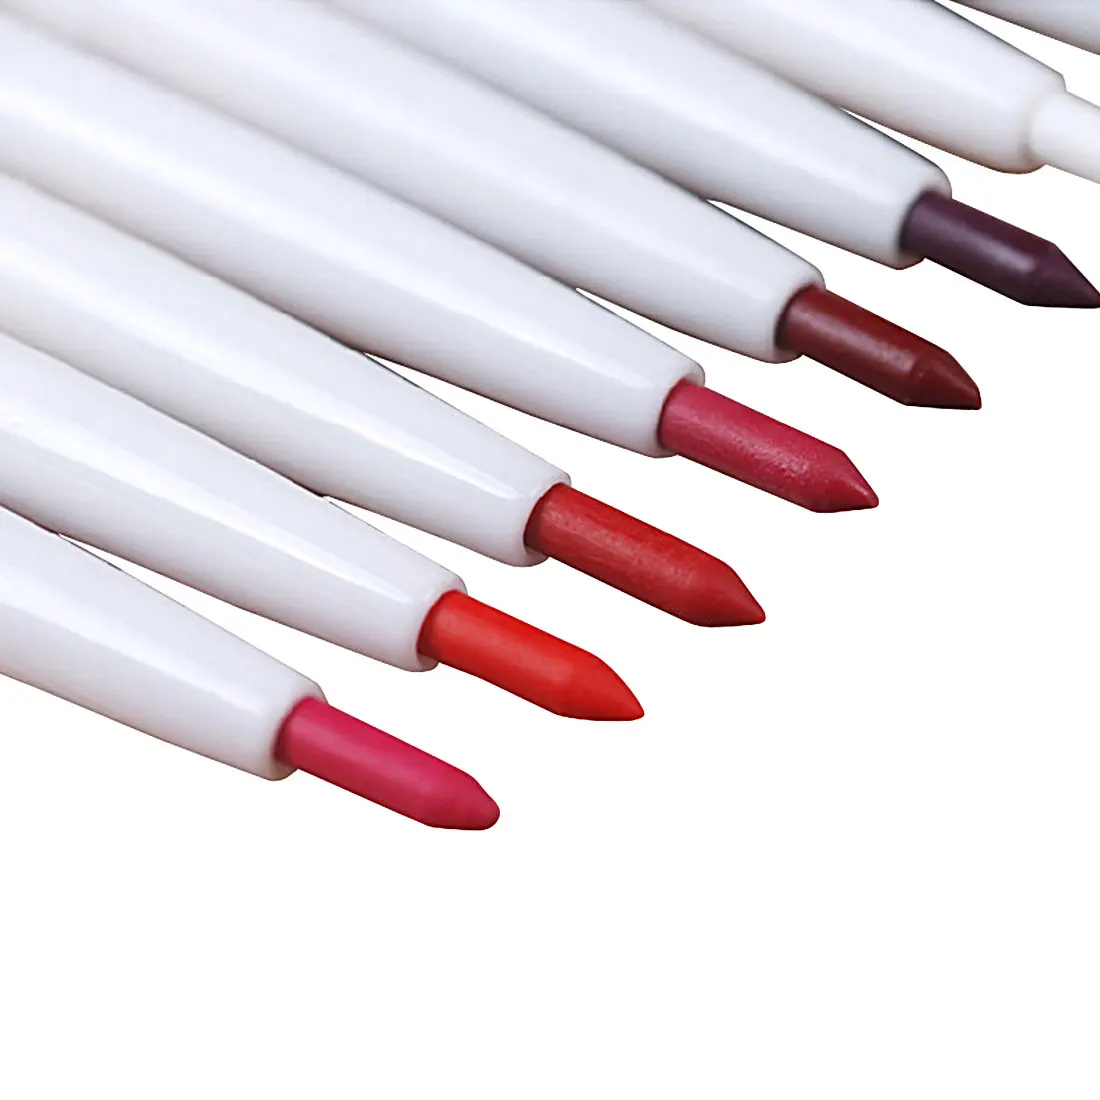 1 шт. автоматический роторный карандаш для губ долговечный натуральный бренд макияж сексуальные продукты леди водонепроницаемый красота карандаш для губ